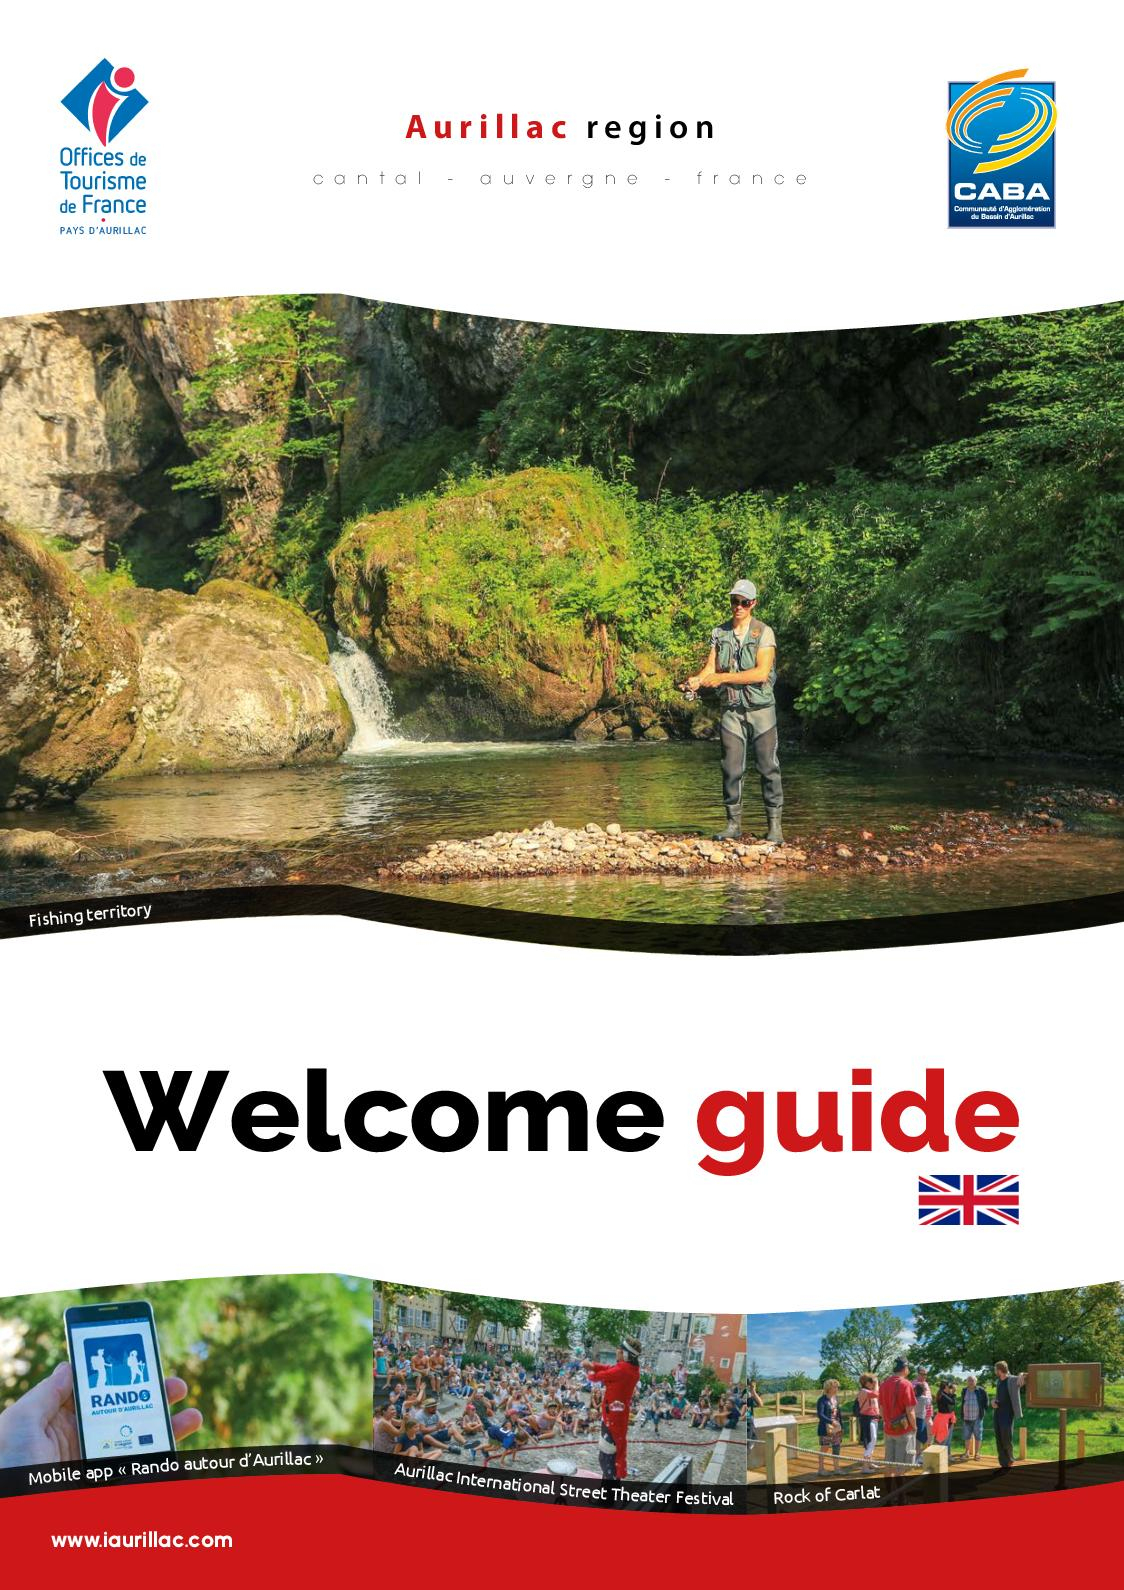 Calaméo - Guide Accueil En Anglais à Unjardin.eu Un Jardin De France